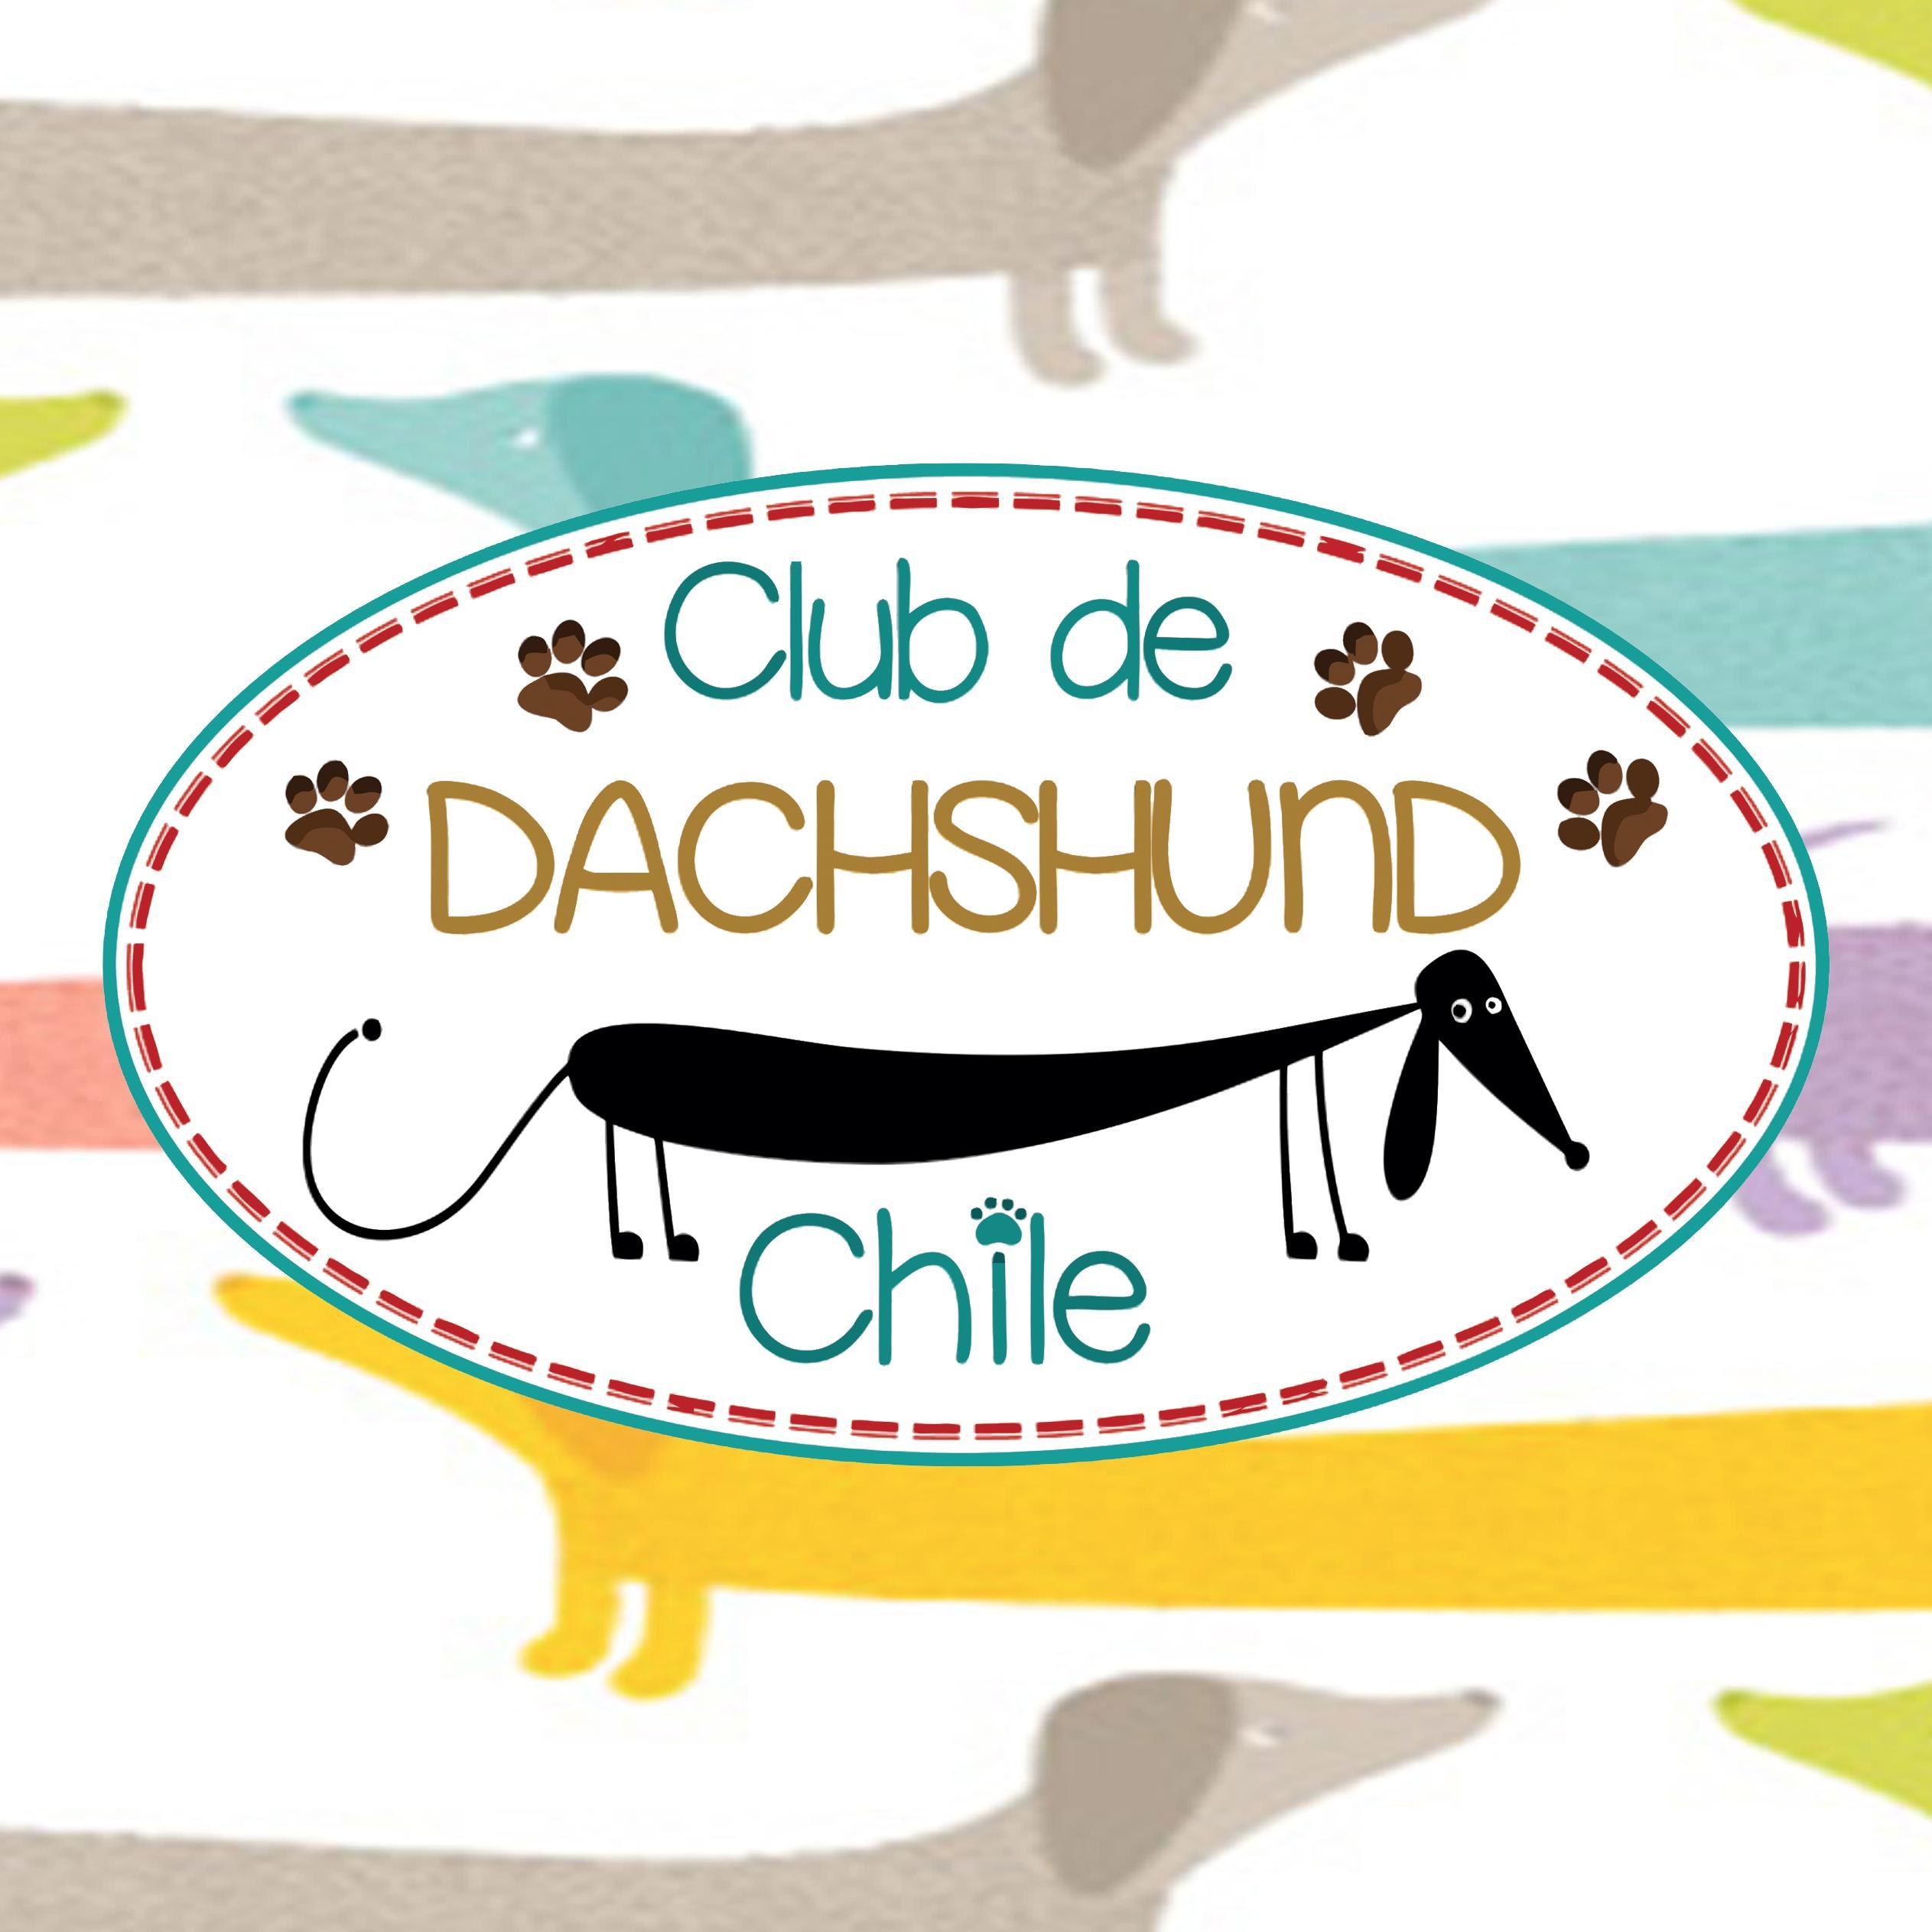 Cuenta de Twitter Oficial del Club de Dachshund Chile, creadores del Día del Salchi en Chile. #SomosSalchilovers Instagram @clubdedachshund_chile